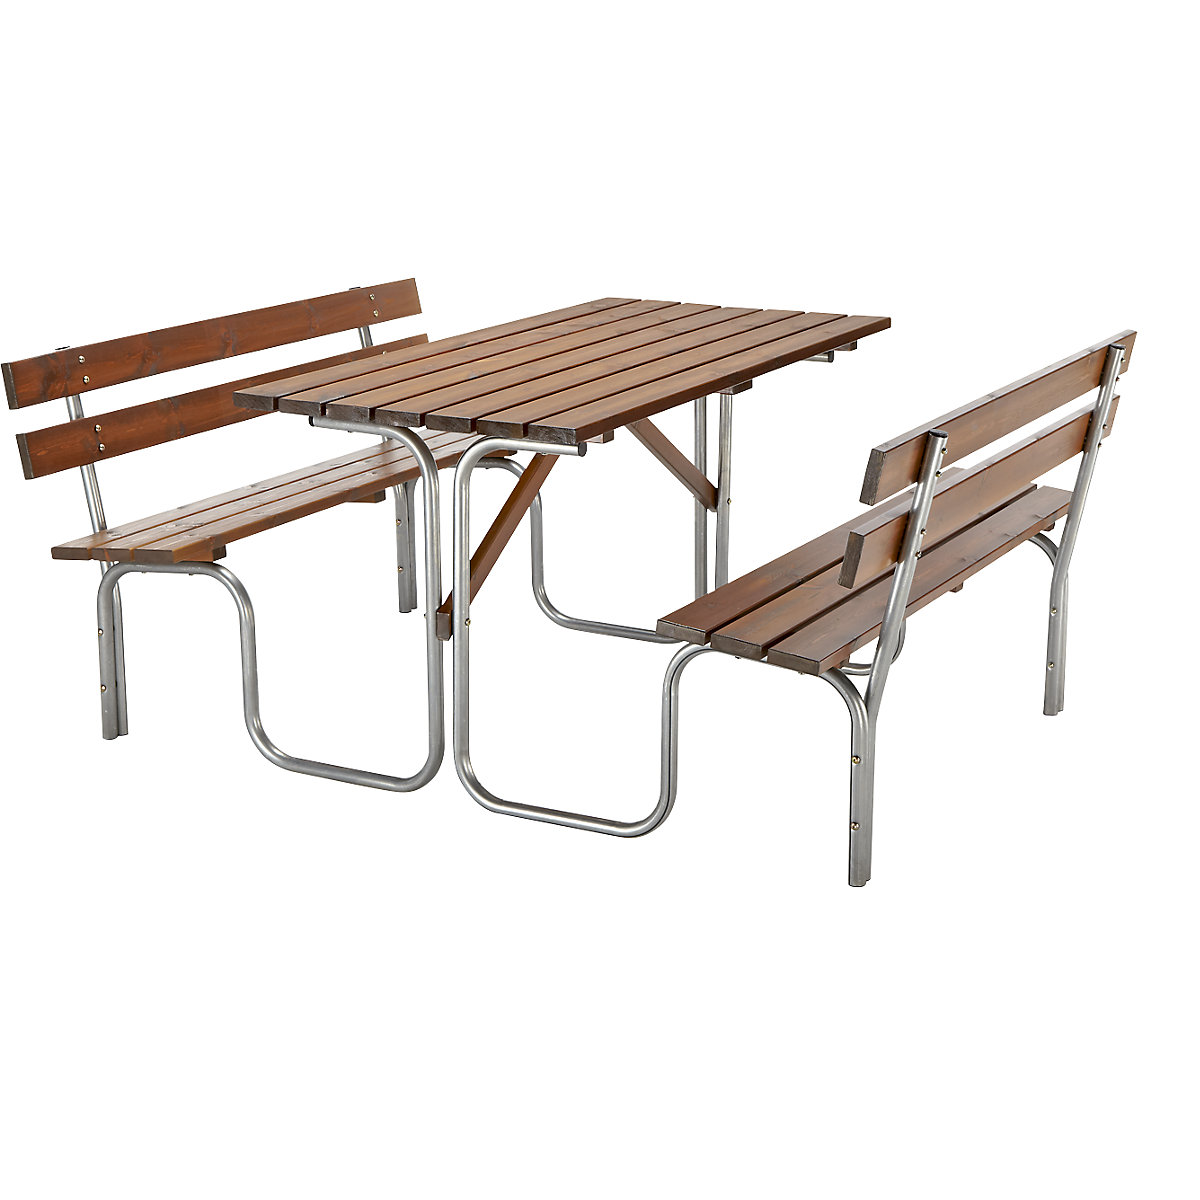 Skupinová lavička na sedenie, stôl a 2 lavičky na sedenie, celková d x h 1500 x 1850 mm